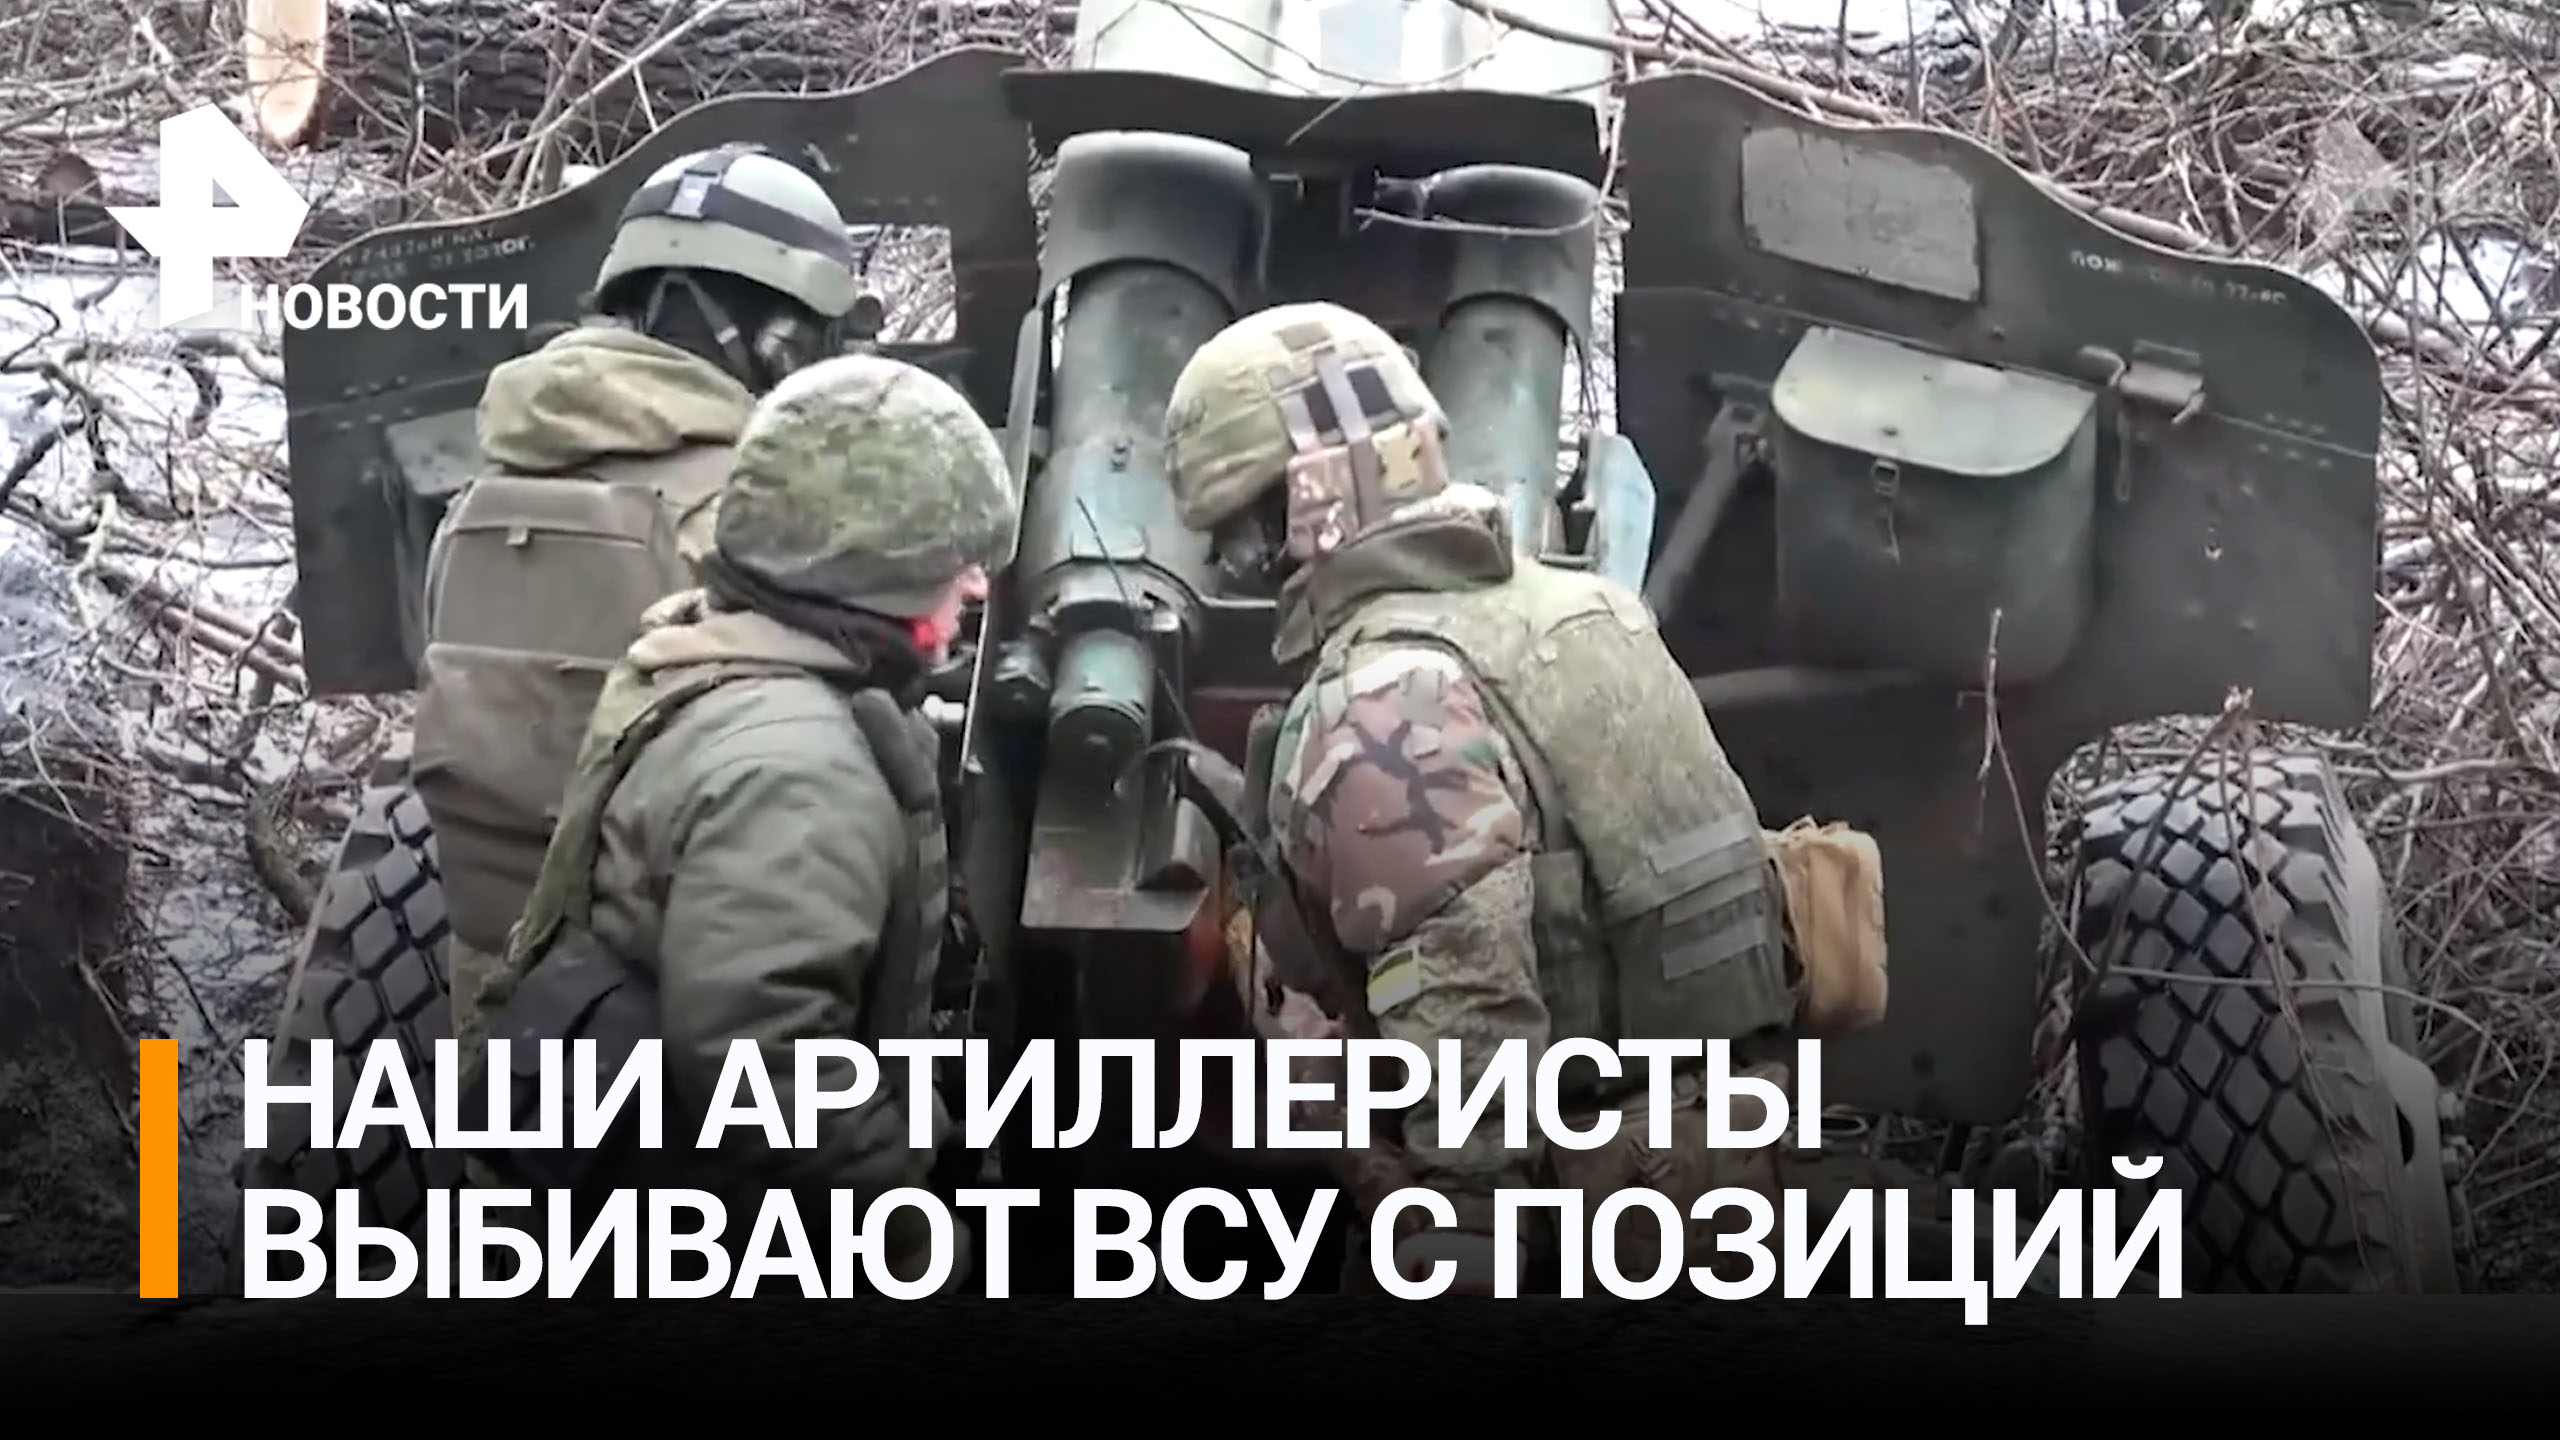 Российские артиллеристы выбивают ВСУ с позиций на донецком направлении / РЕН Новости